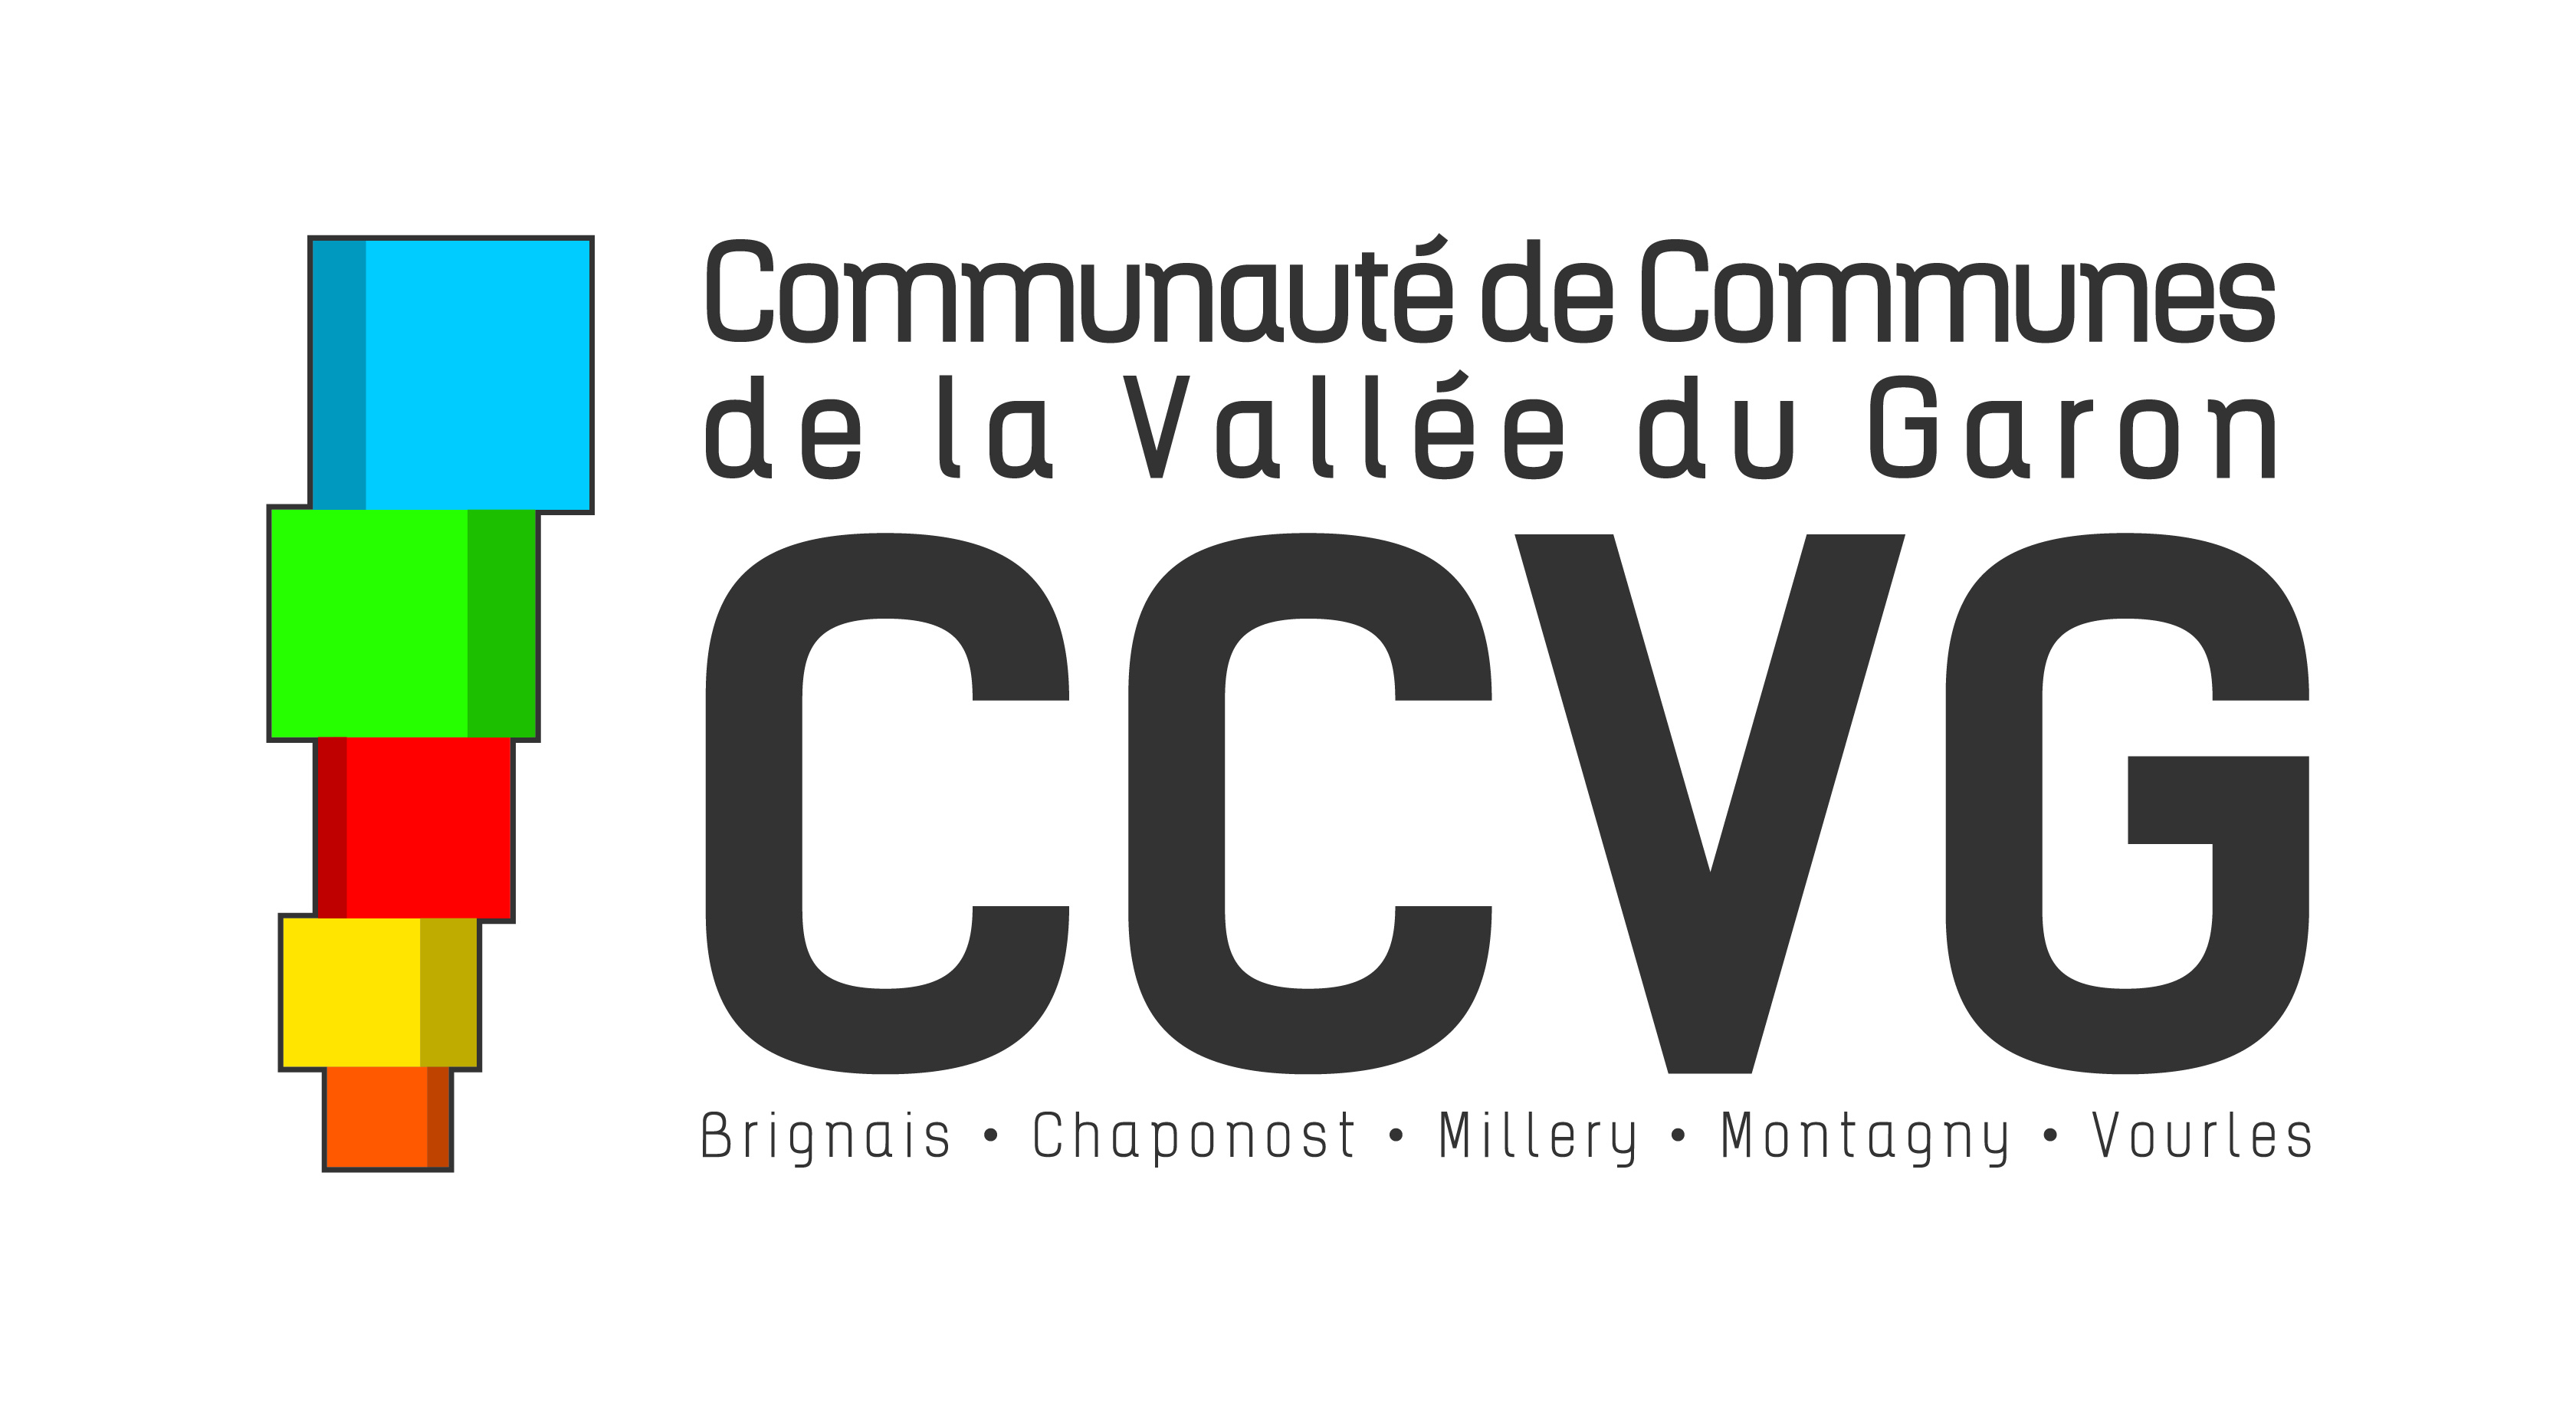 Communauté de communes de la Vallée du Garon